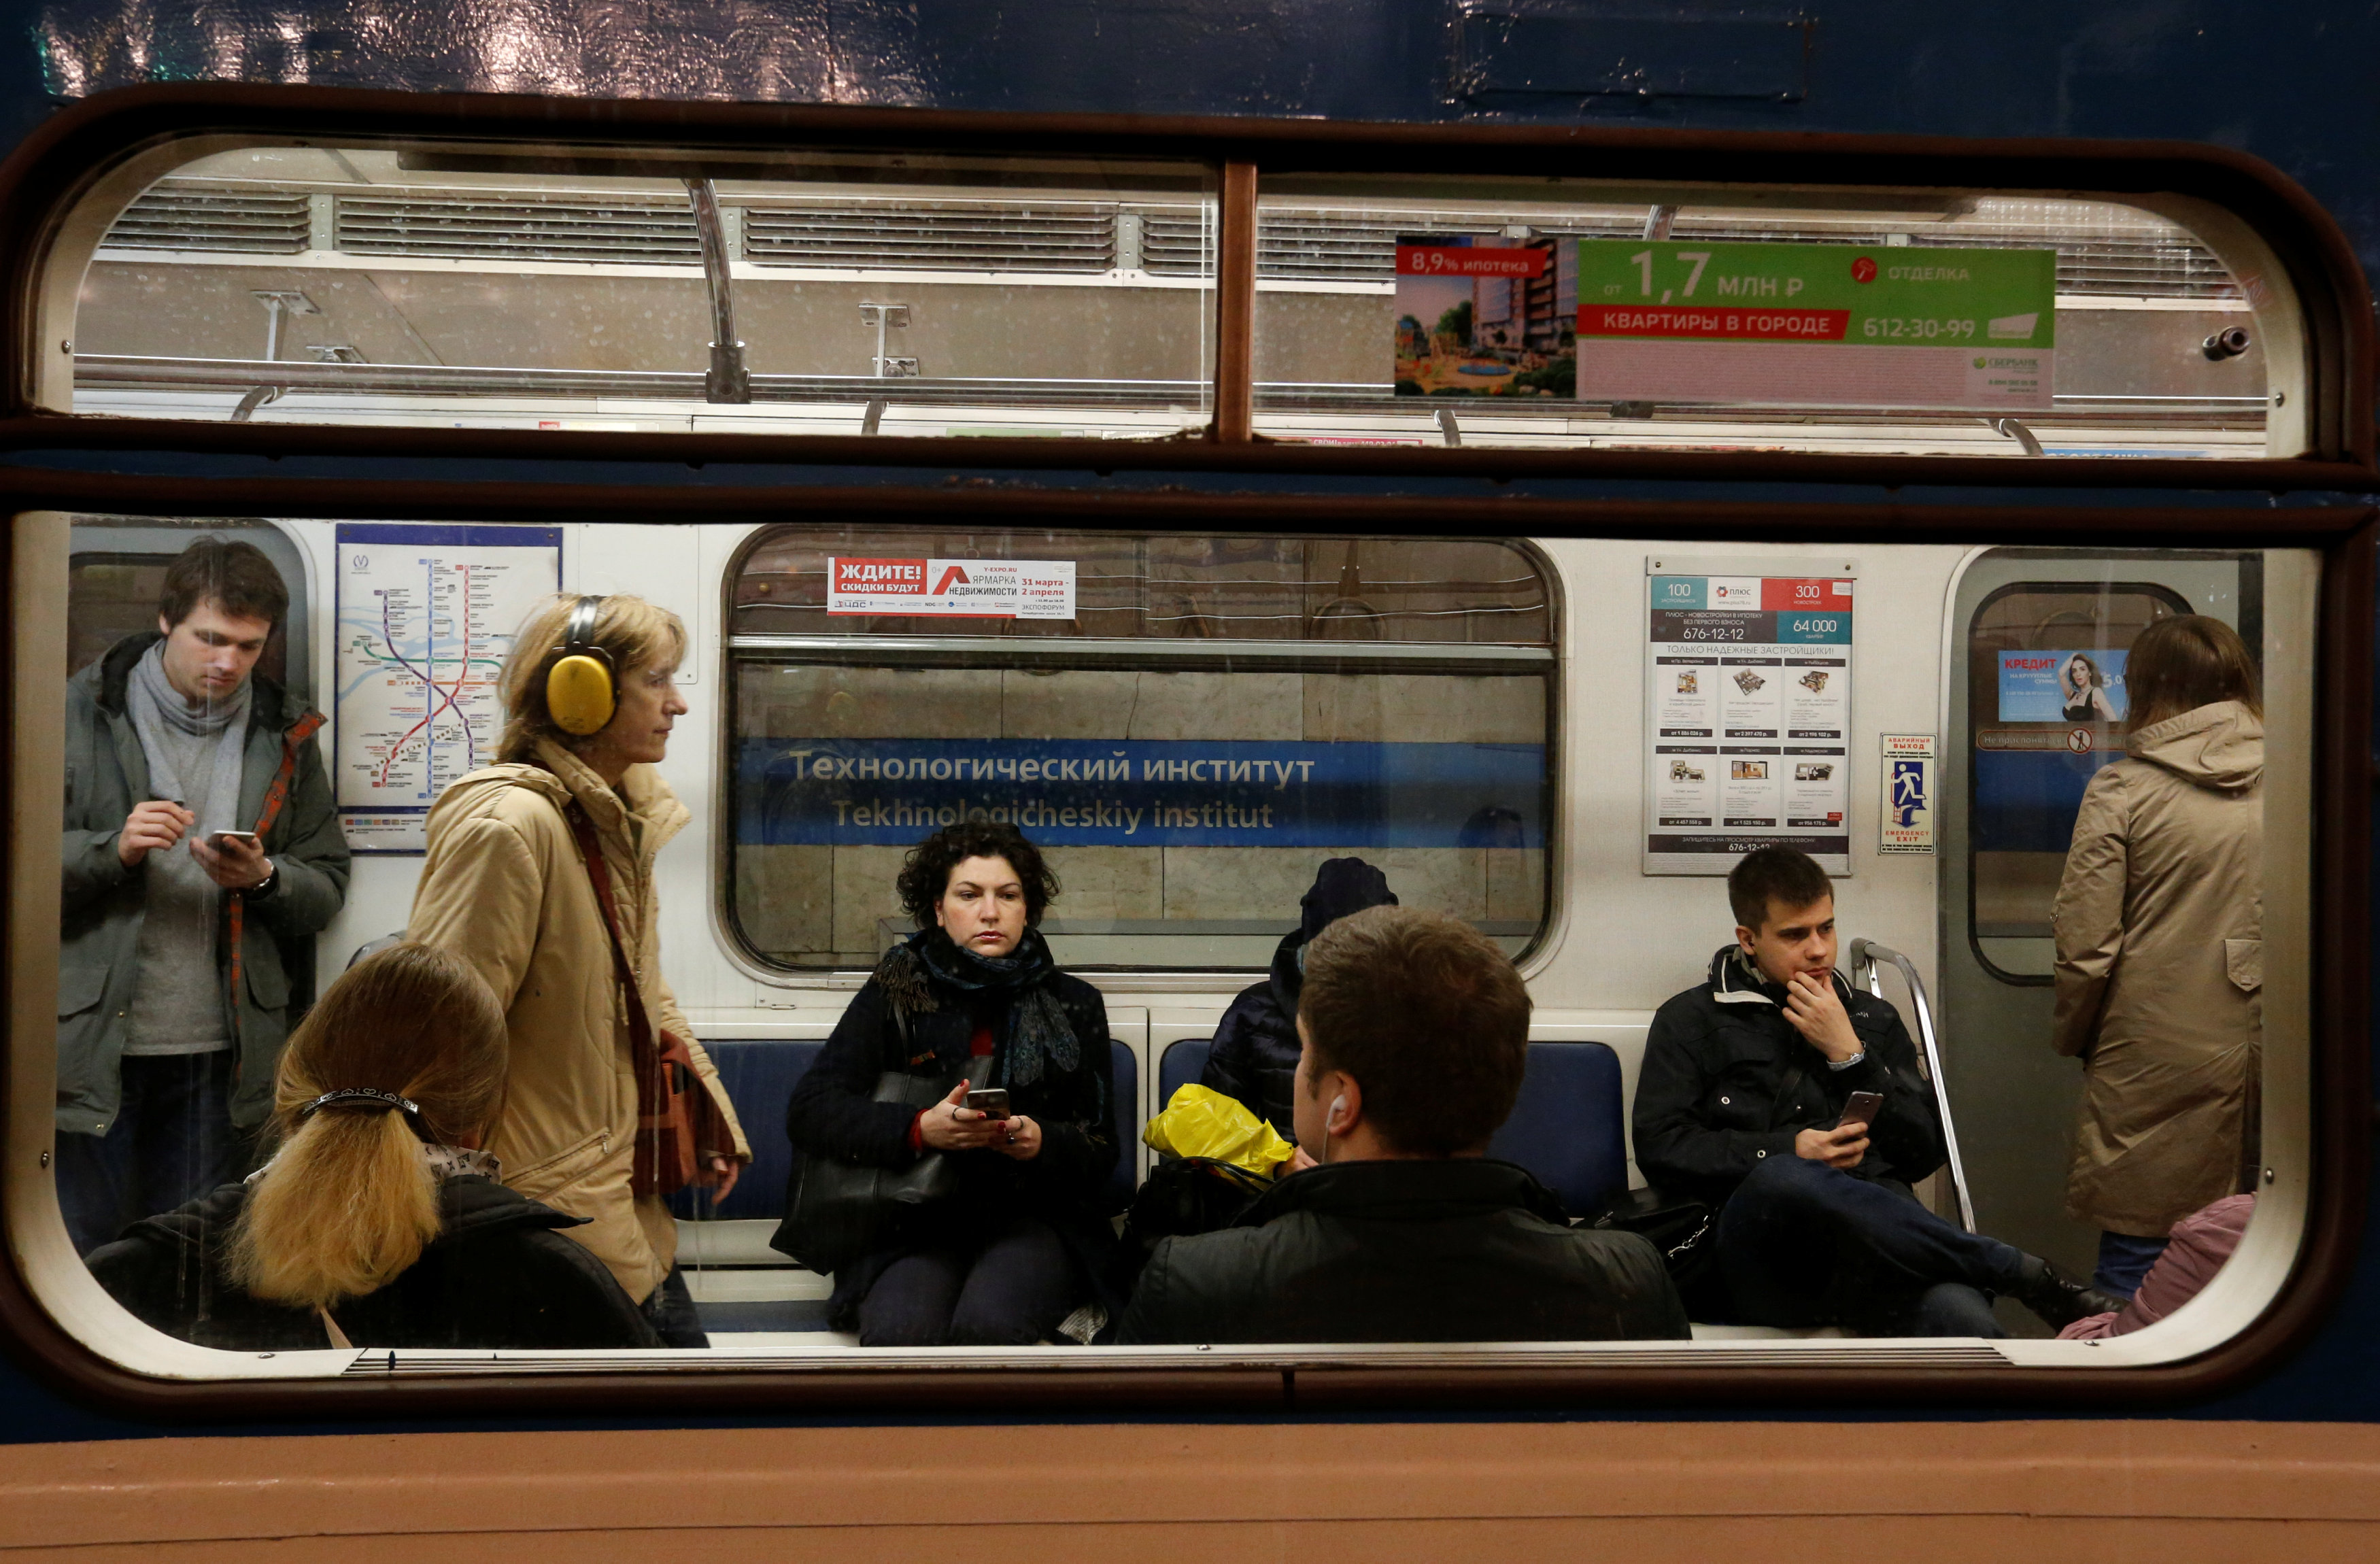 Λήξη συναγερμού στο Μετρό Αγ.Πετρούπολης μετά από πληροφορία για βόμβα